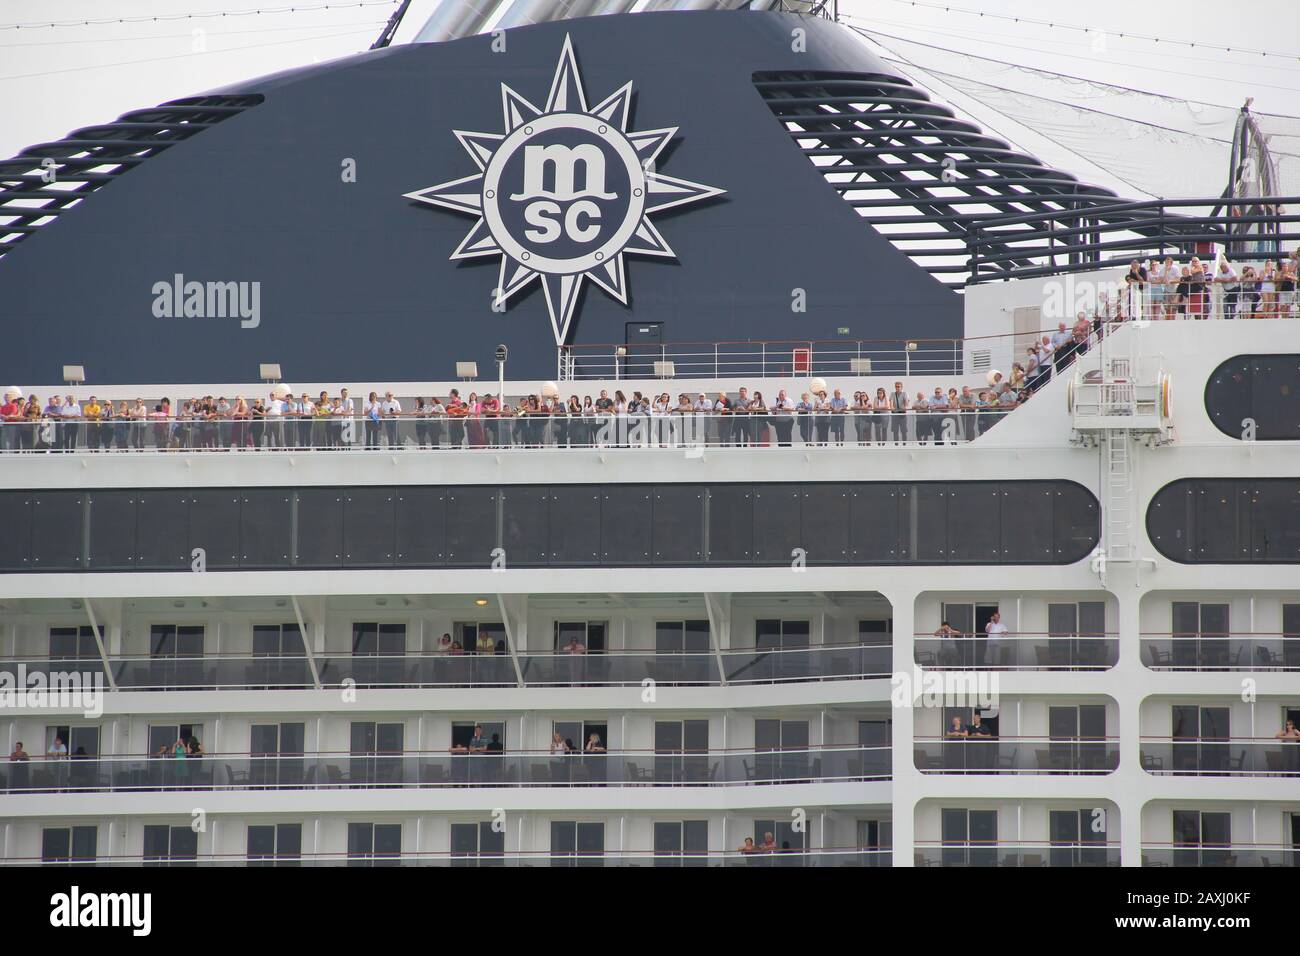 Una grande nave da crociera arriva al porto di Venezia. Italia. Tipo di nave. Primo piano. Foto Stock